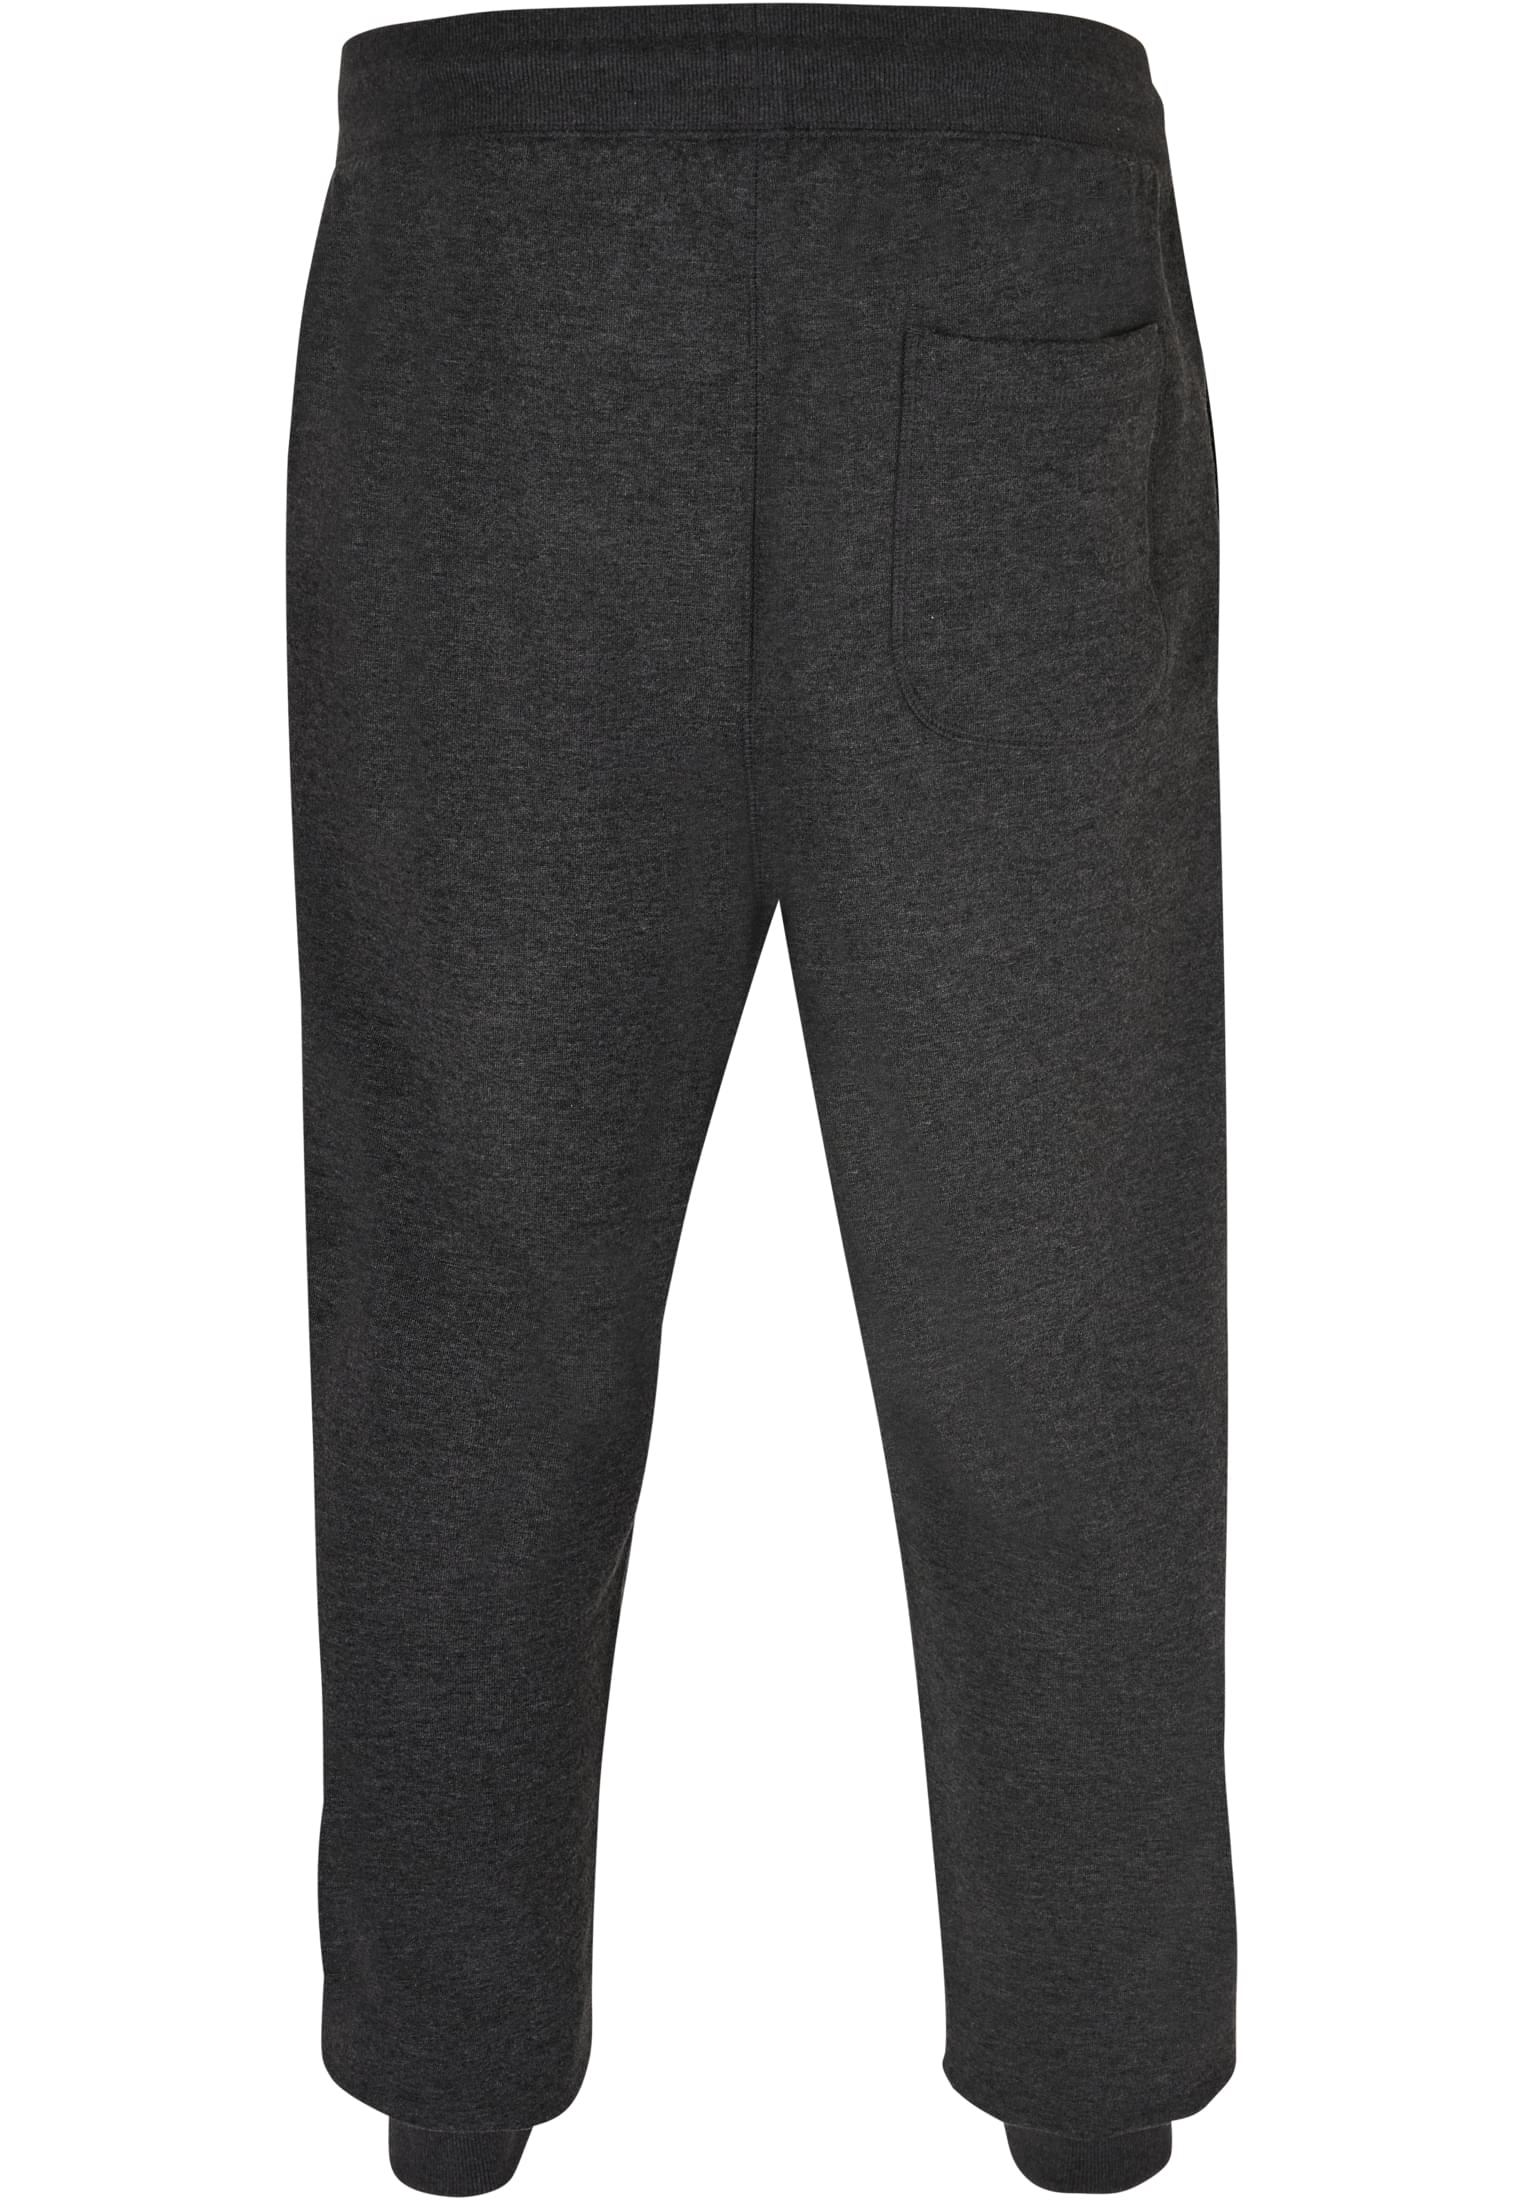 Herren Basic Sweatpants in Farbe charcoal